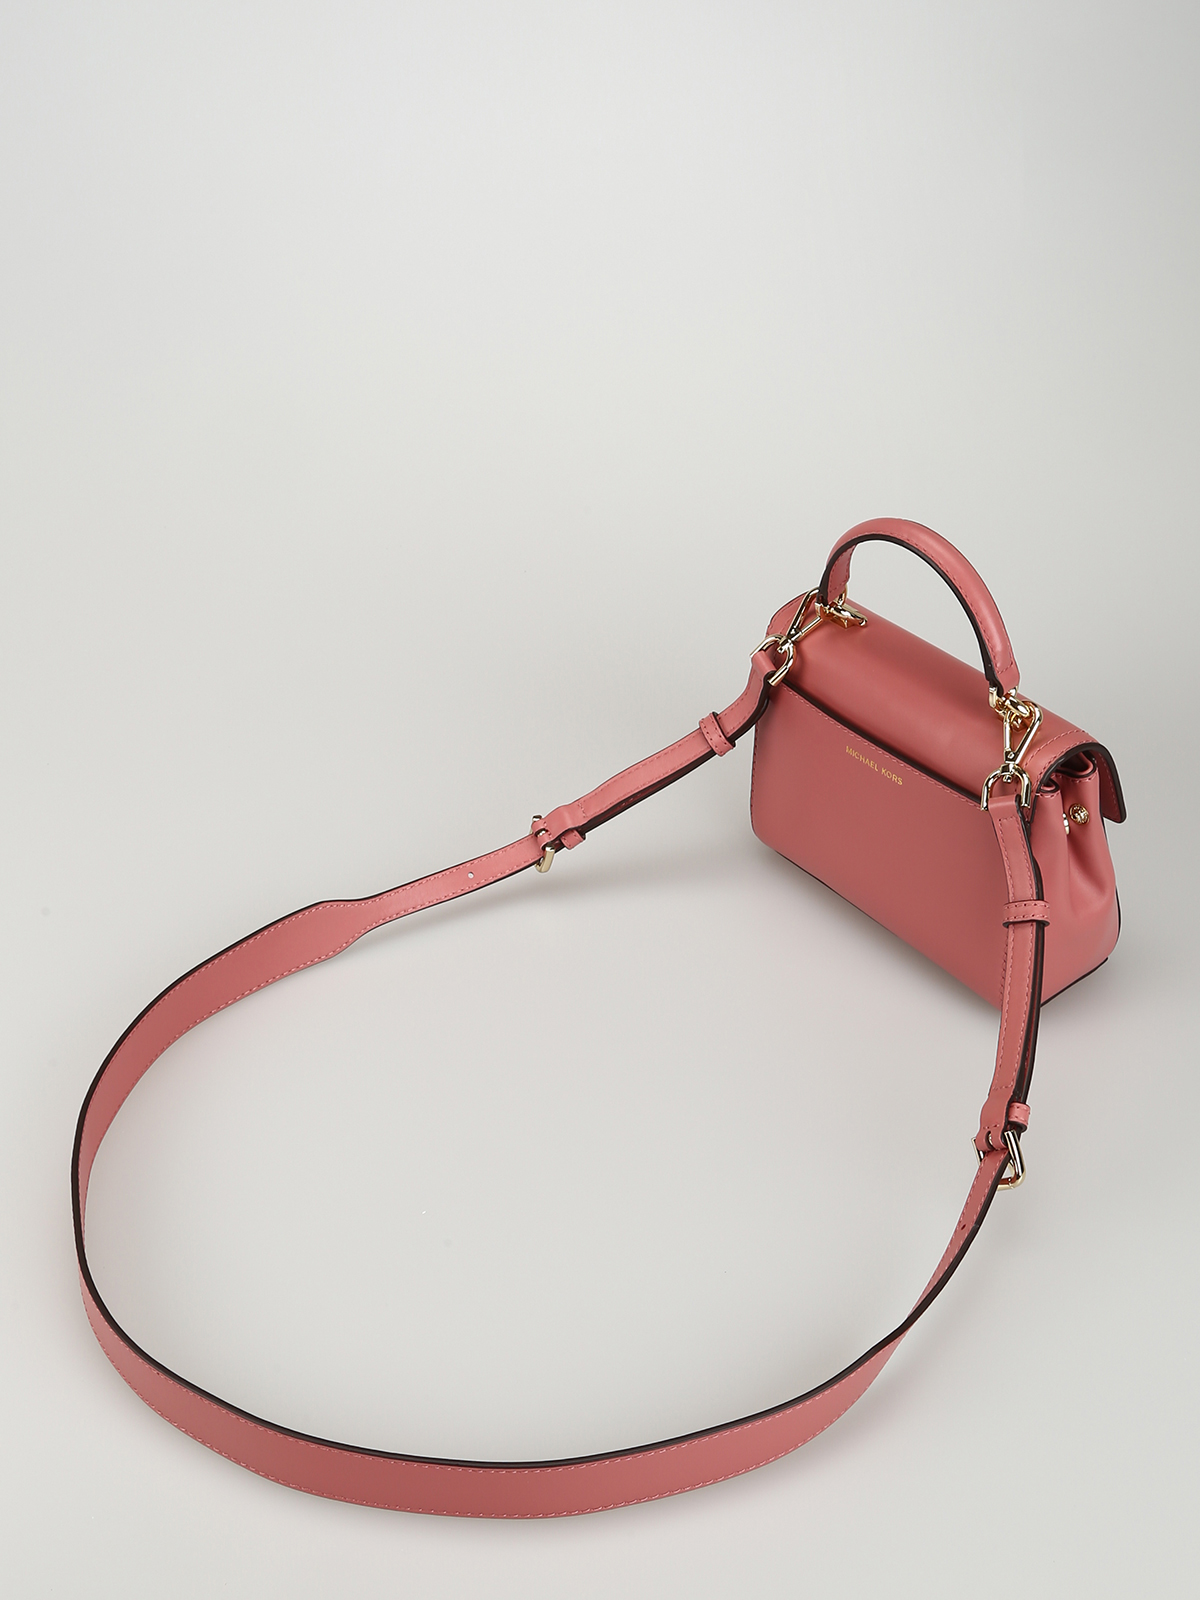 MICHAEL KORS: Michael leather bag - Pink